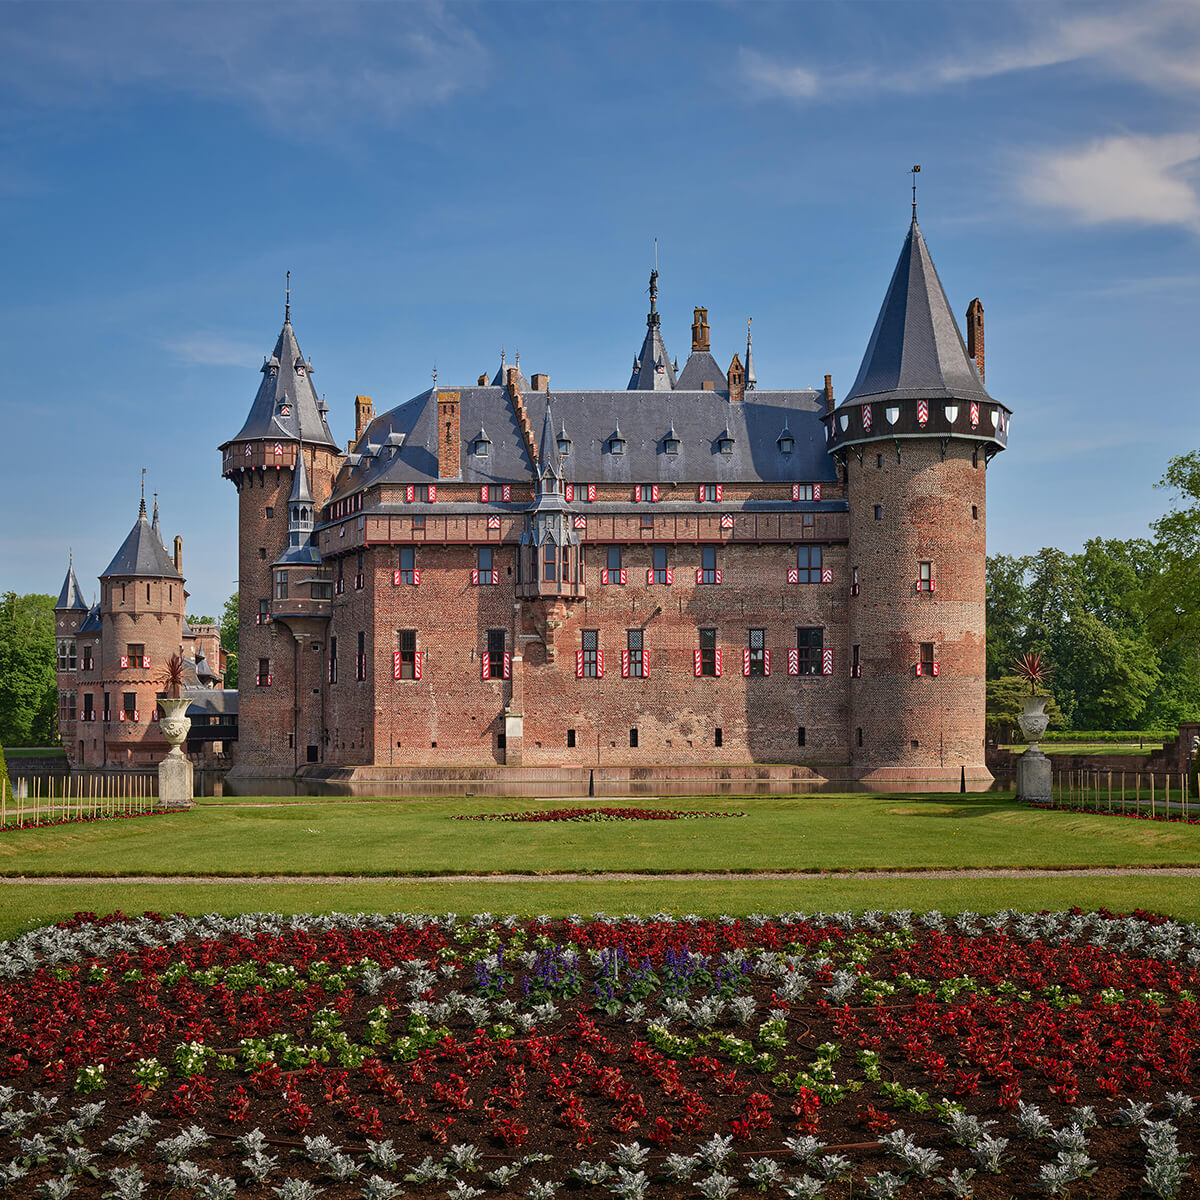 Castle de Haar from the side